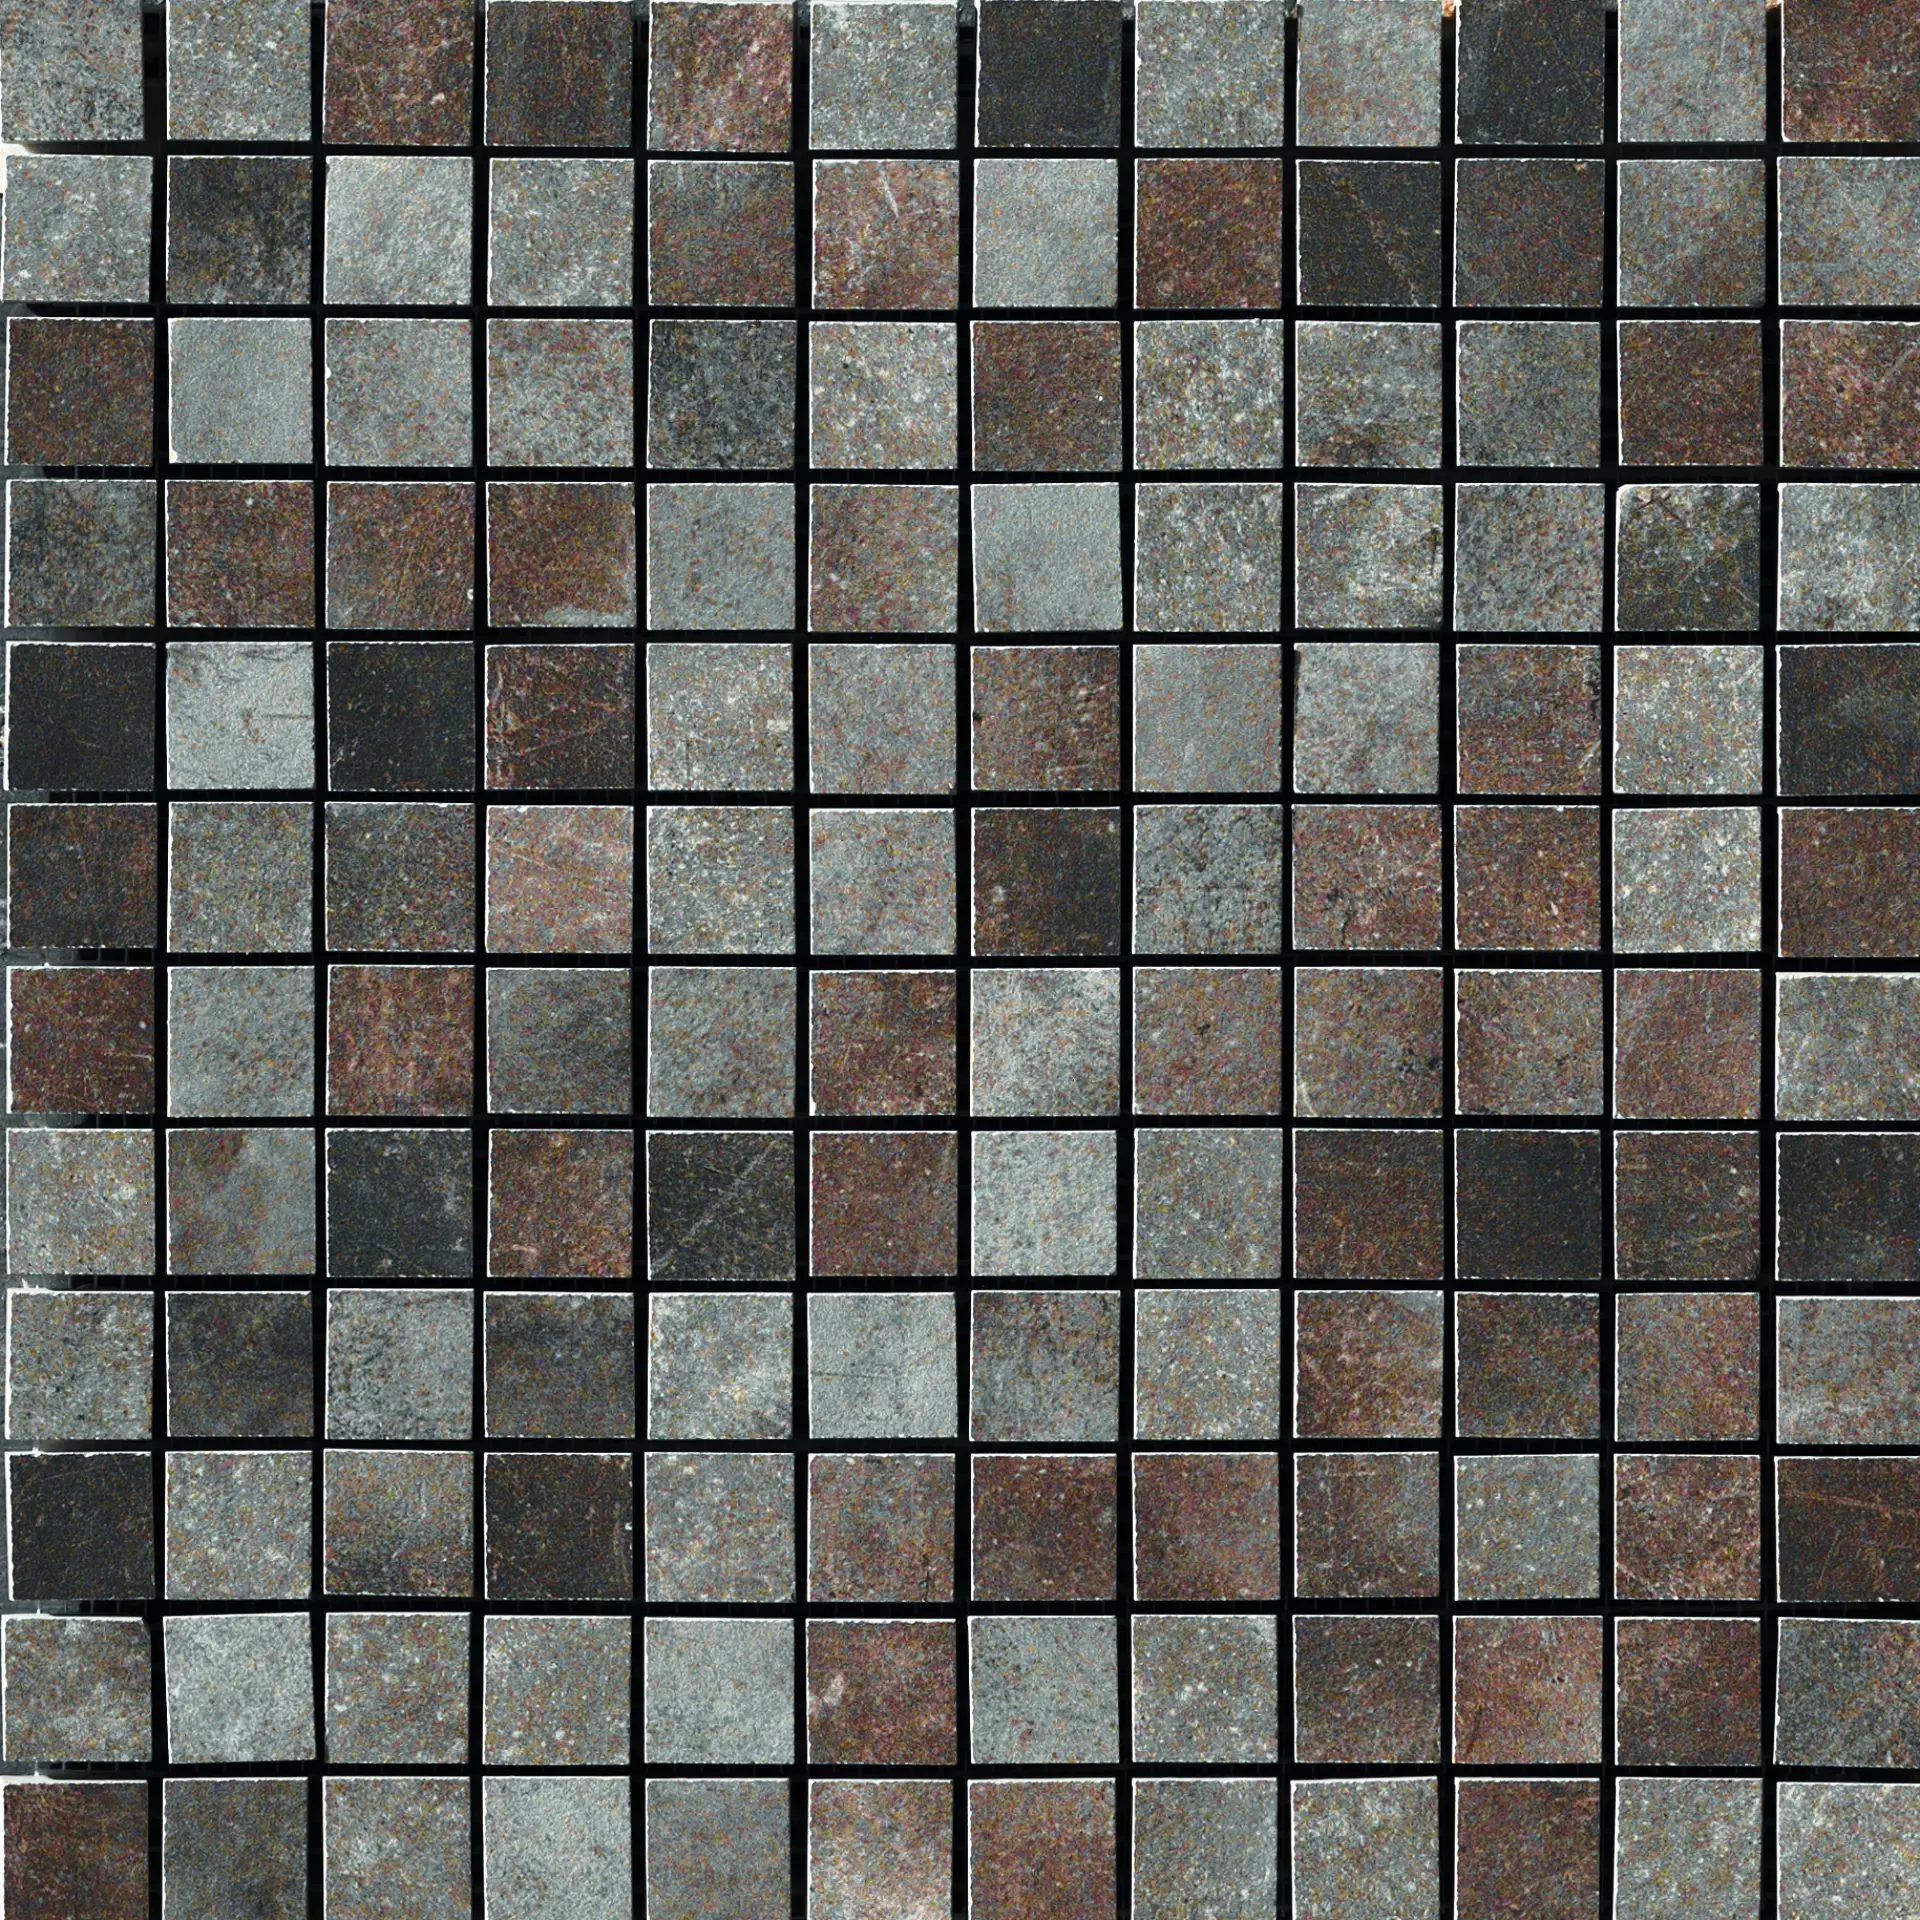 CIR Miami Light Brown Naturale Mosaic 1064131 30x30cm 10mm